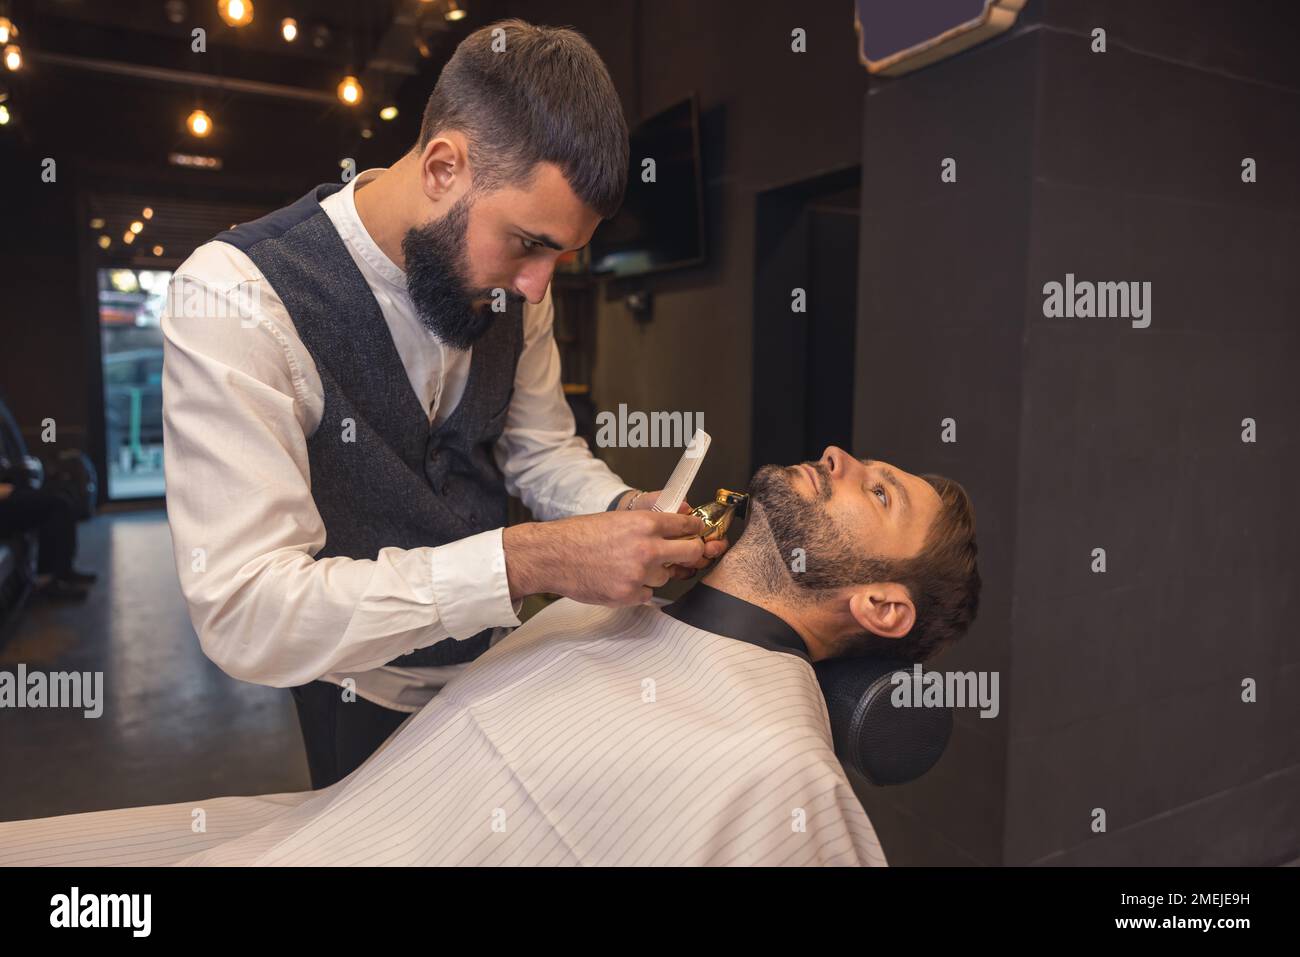 coiffeur professionnel taillez soigneusement la barbe du client Banque D'Images